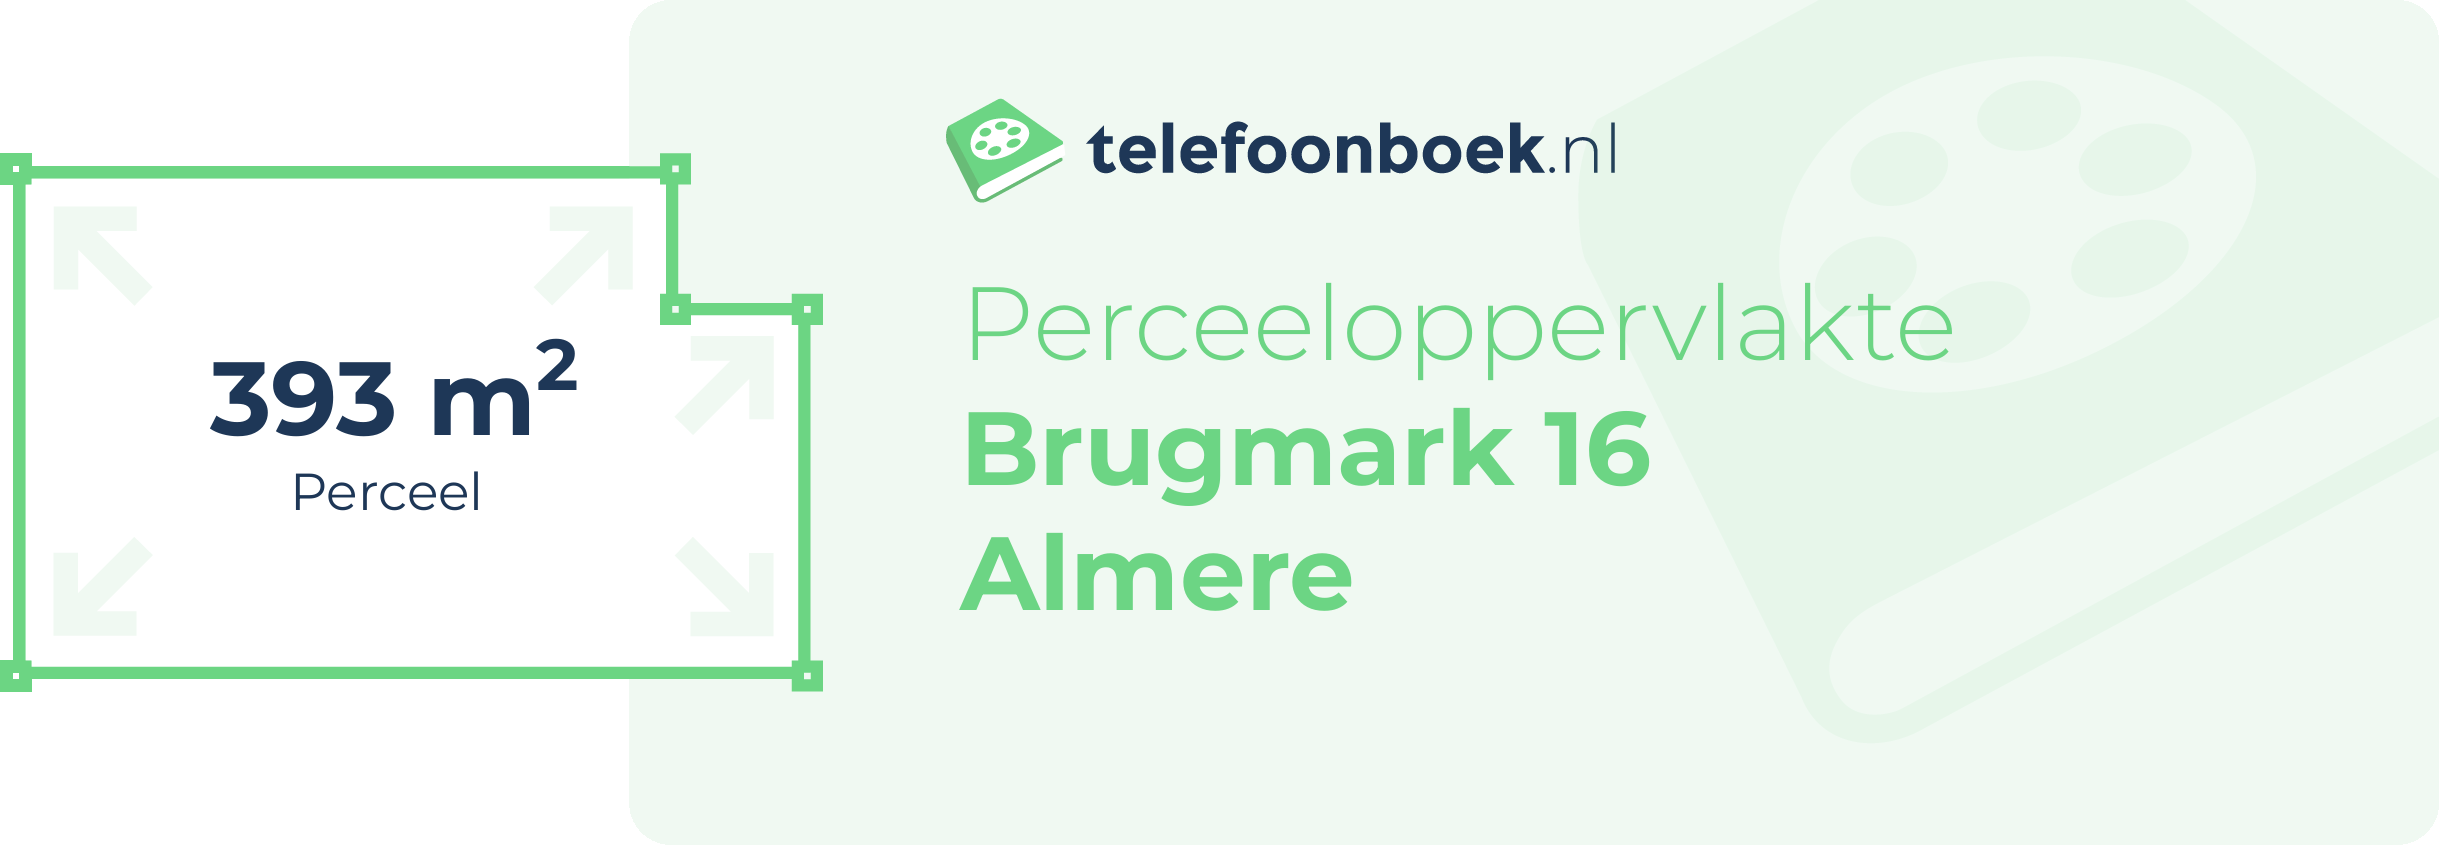 Perceeloppervlakte Brugmark 16 Almere